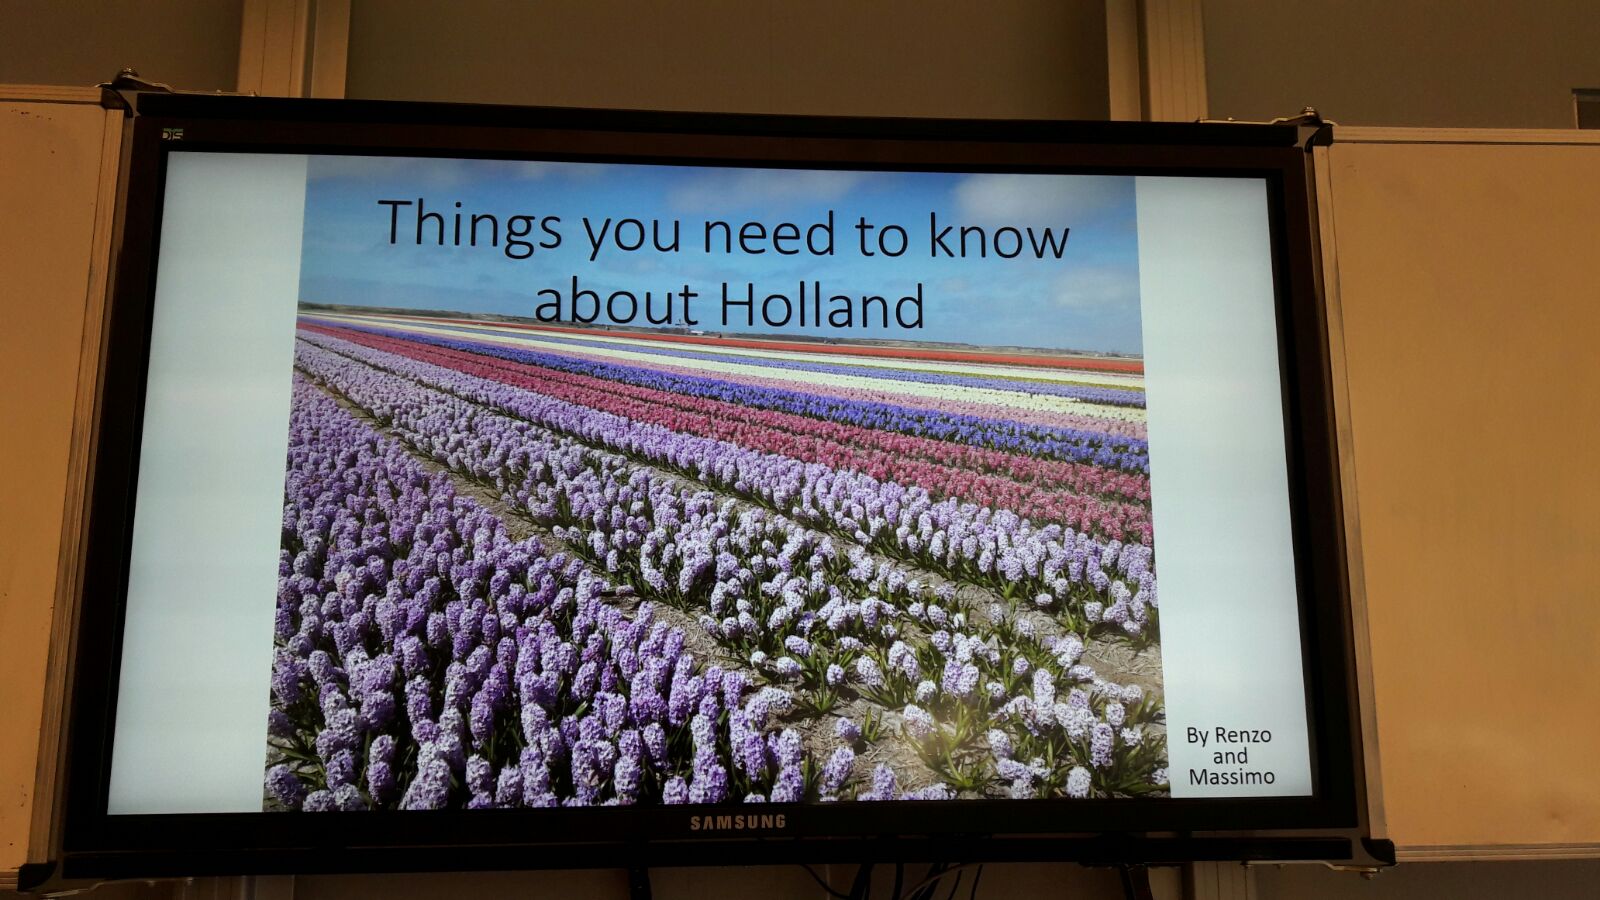 Presentacions dels alumnes holandesos